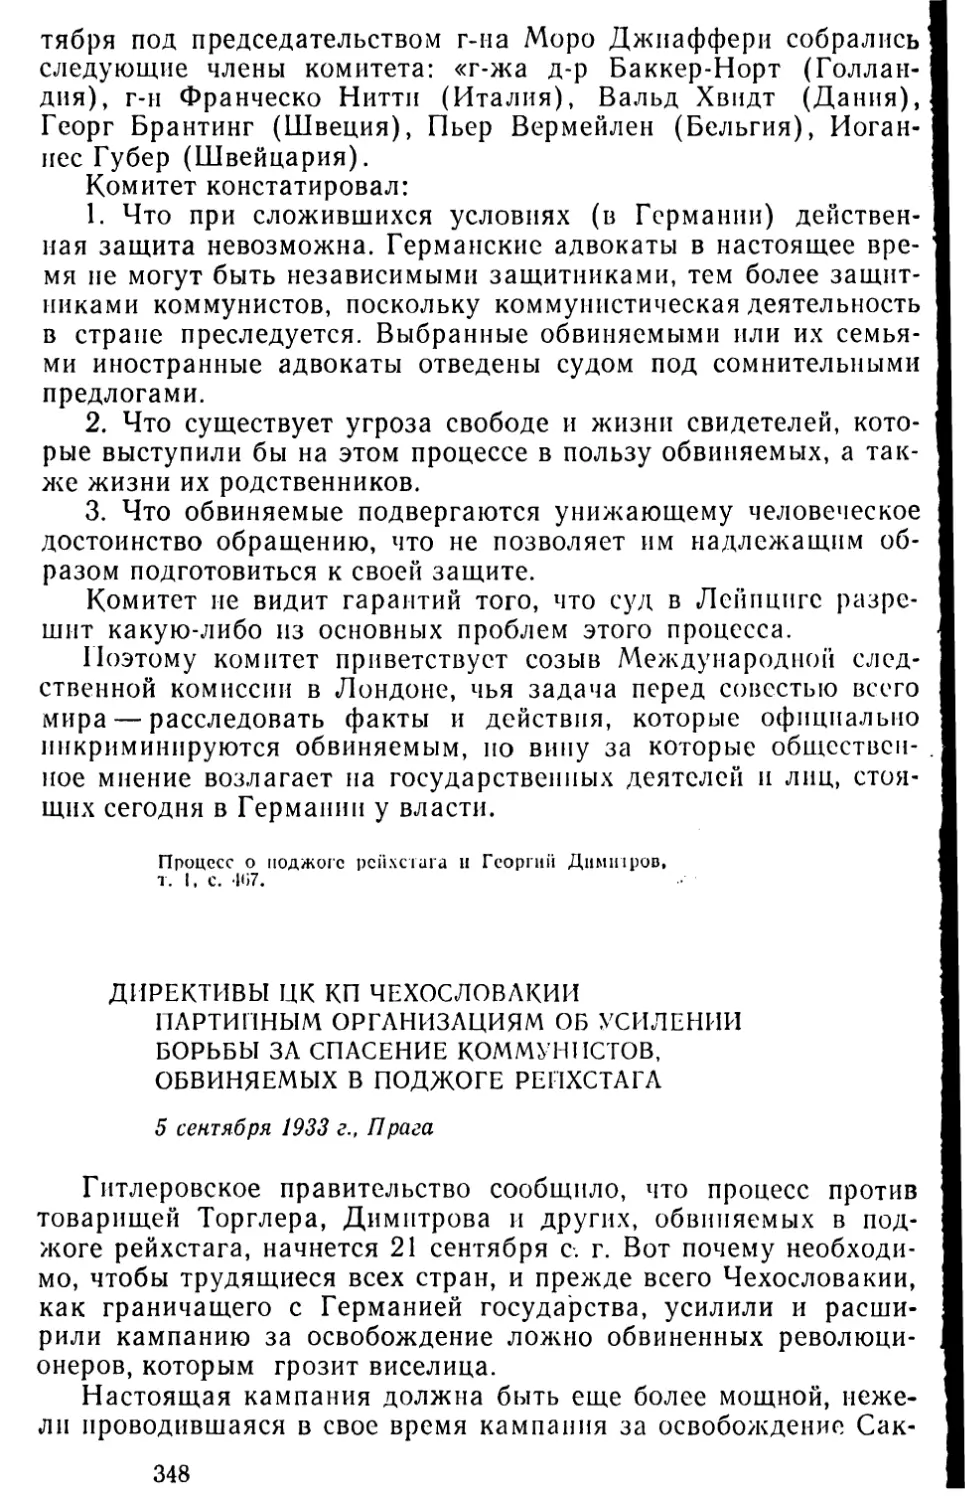 Директивы ЦК КП Чехословакии партийным организациям об усилении борьбы за спасение коммунистов, обвиняемых в поджоге рейхстага. 5 сентября 1933 г